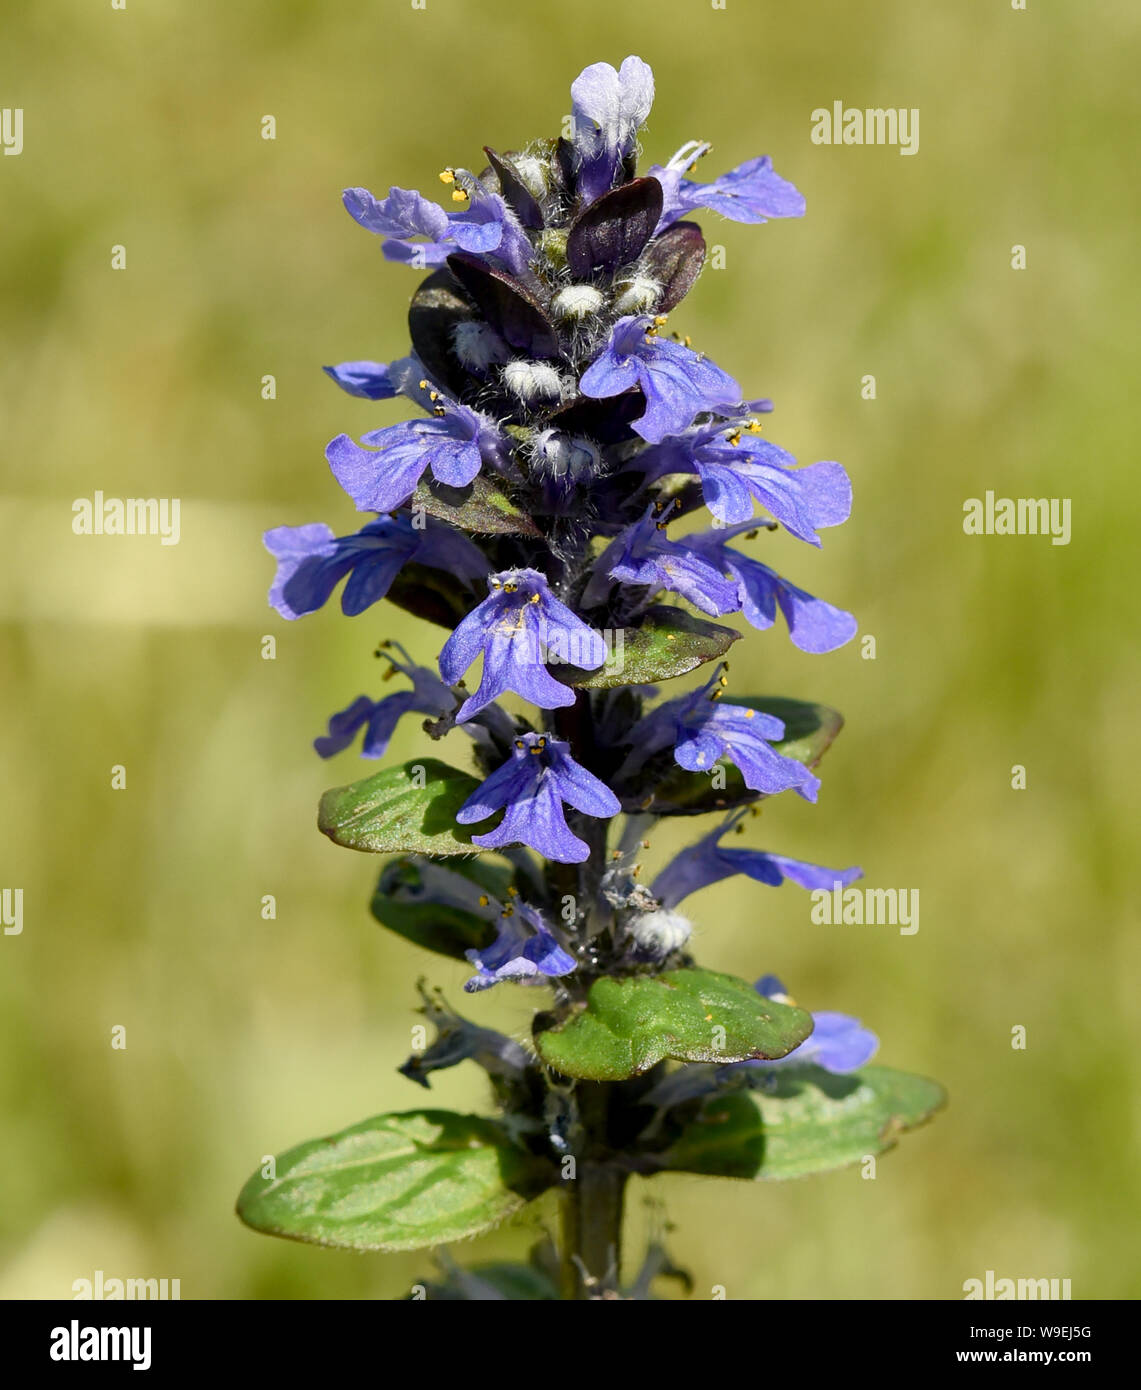 Guensel, Ajuga Reptans, ist eine Wildpflanze mit blauen Blueten und zu den gehoert Heilpflanzen. Guensel, Ajuga reptans es una planta silvestre con azul flo Foto de stock